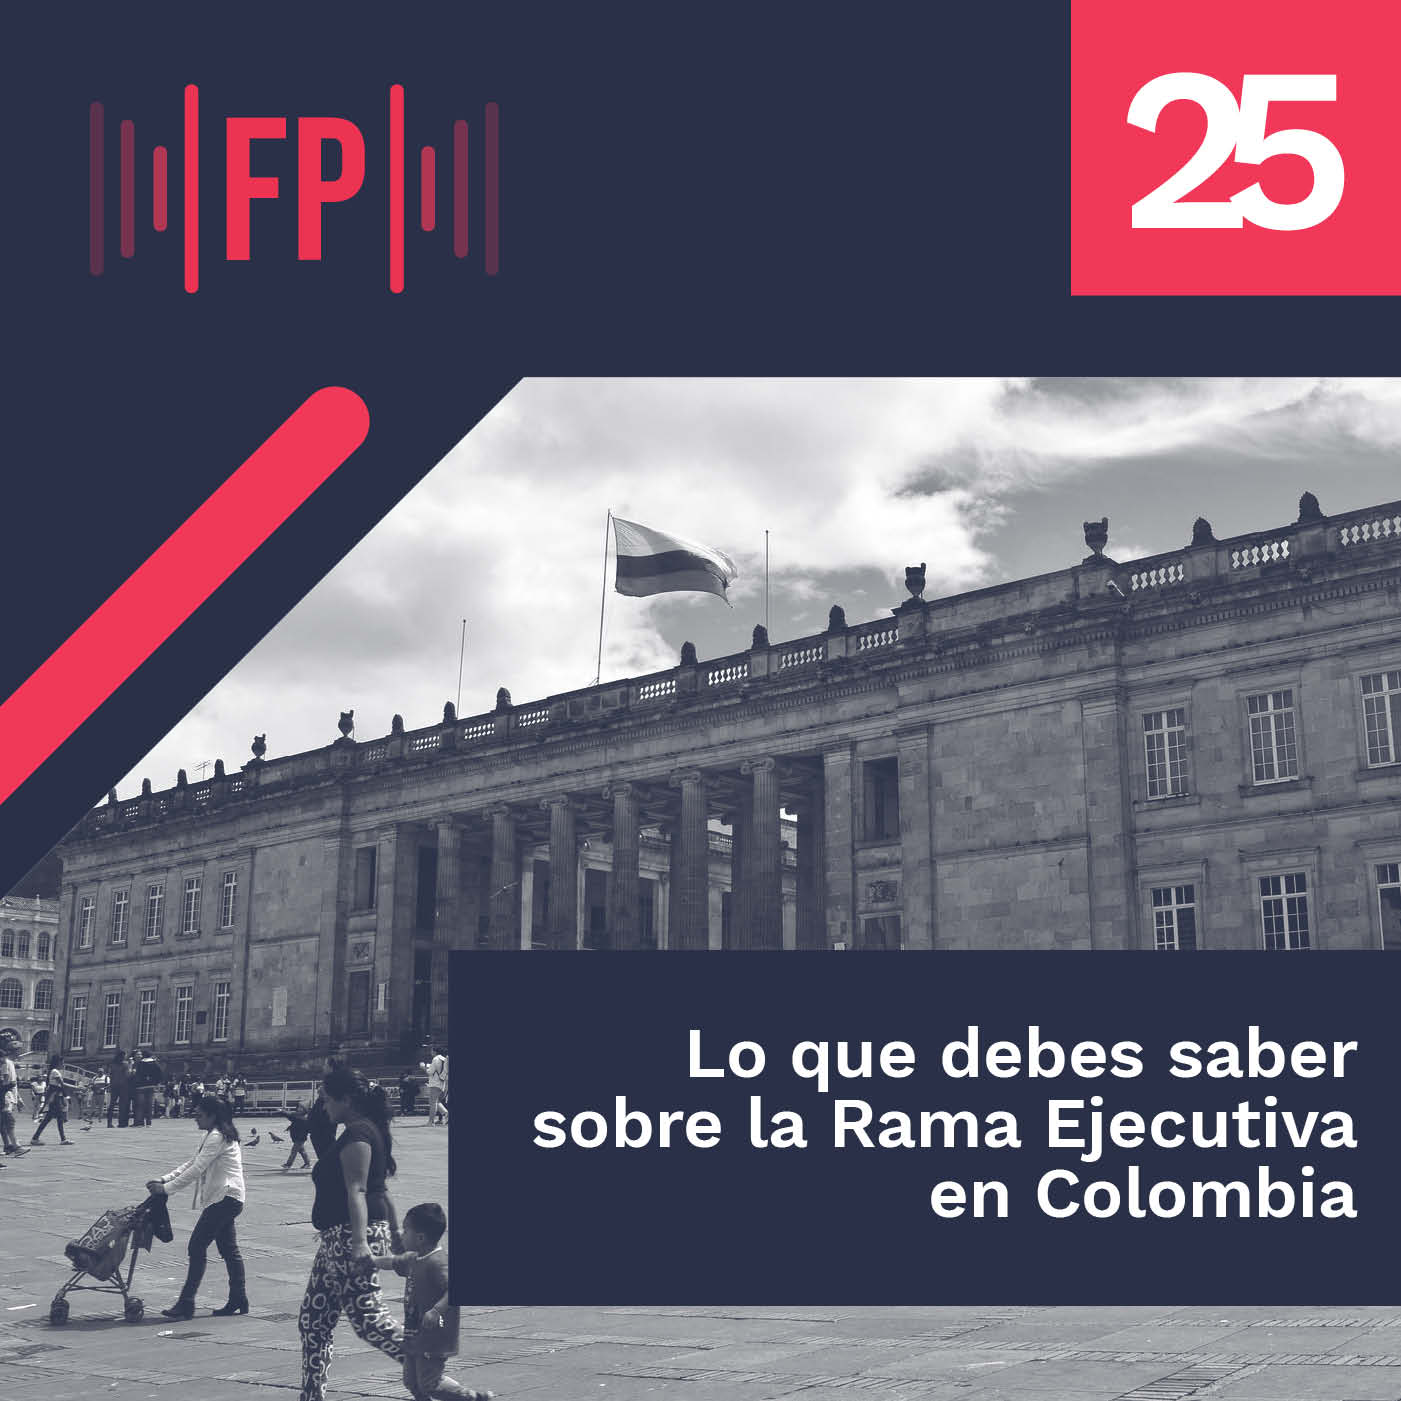 LO QUE DEBES SABER DE LA RAMA EJECUTIVA EN COLOMBIA